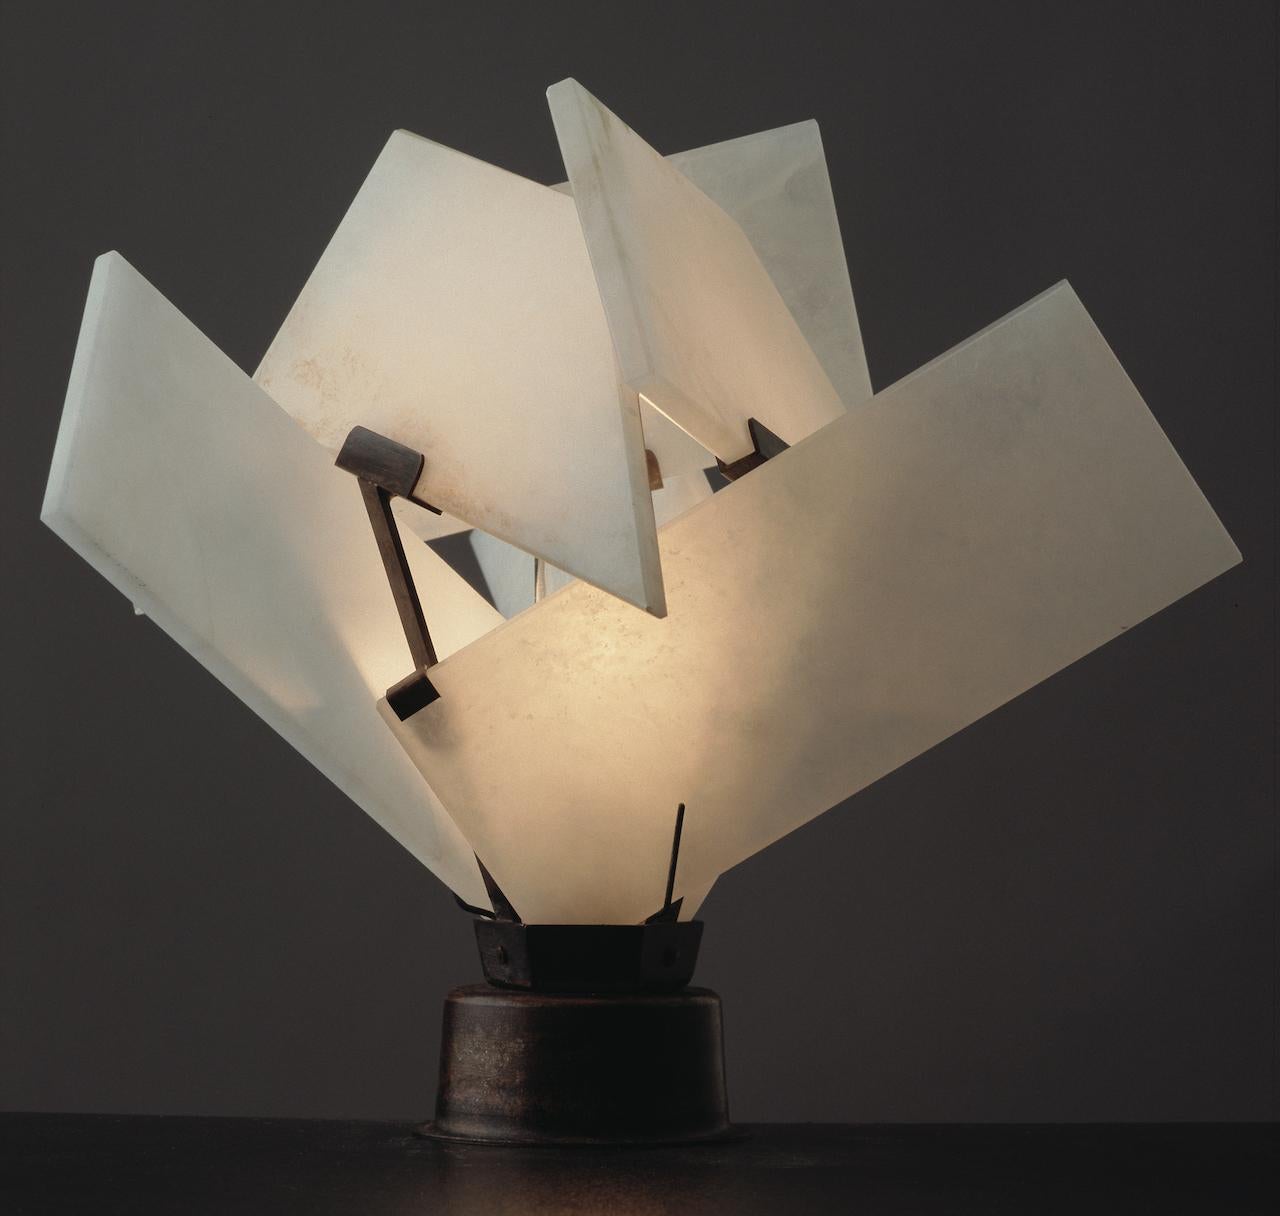 Créée en 1924, cette lampe tire son charme de son design contemporain et complexe : l'abat-jour devient une véritable sculpture entre les mains de Pierre Chareau.
